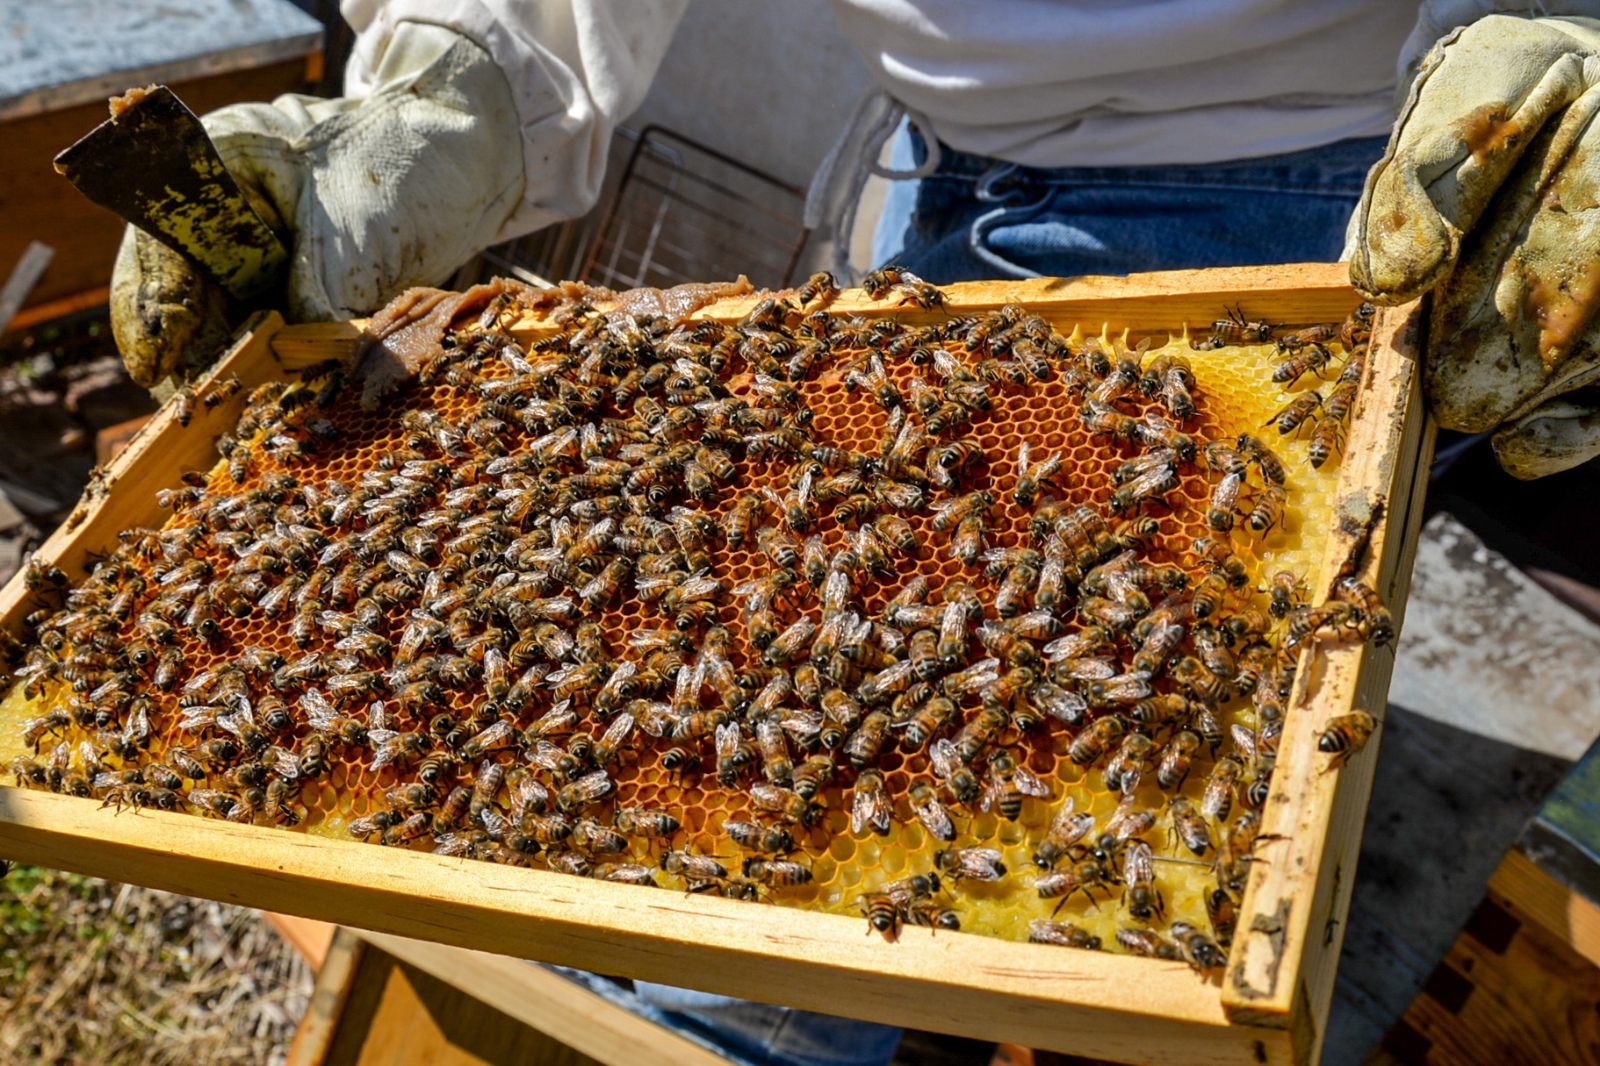 La crisis que enfrentan los apicultores, es de las peores que les ha tocado, declaran